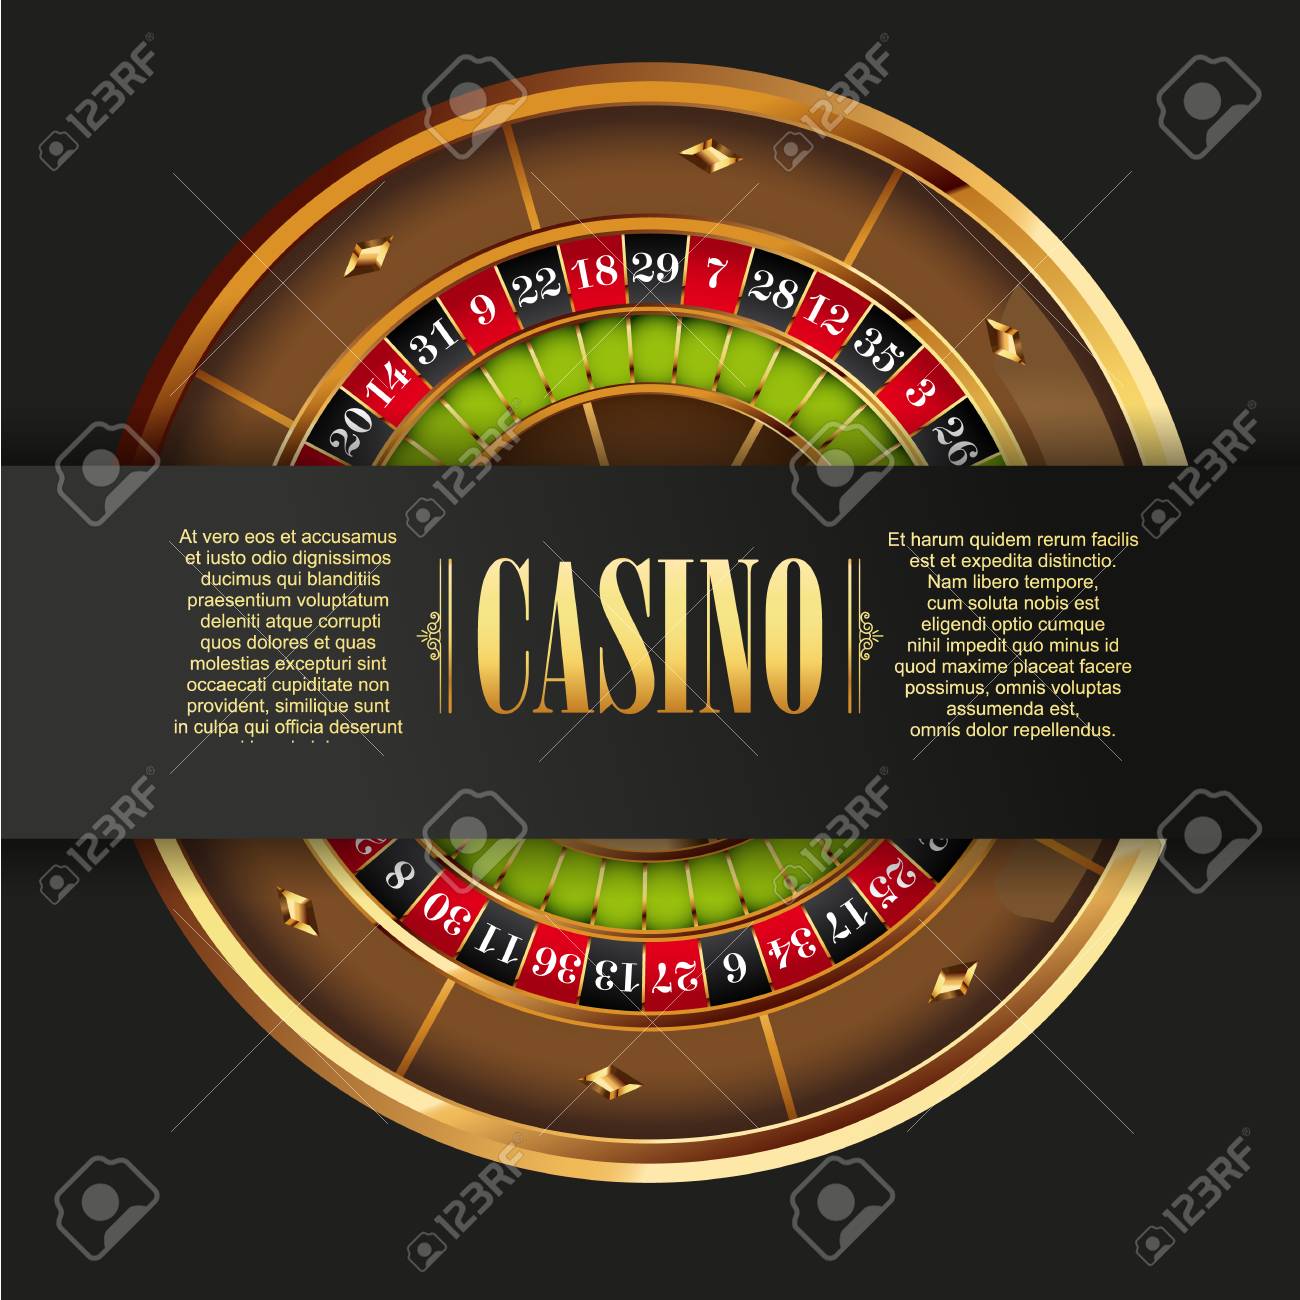 Casino wheel game